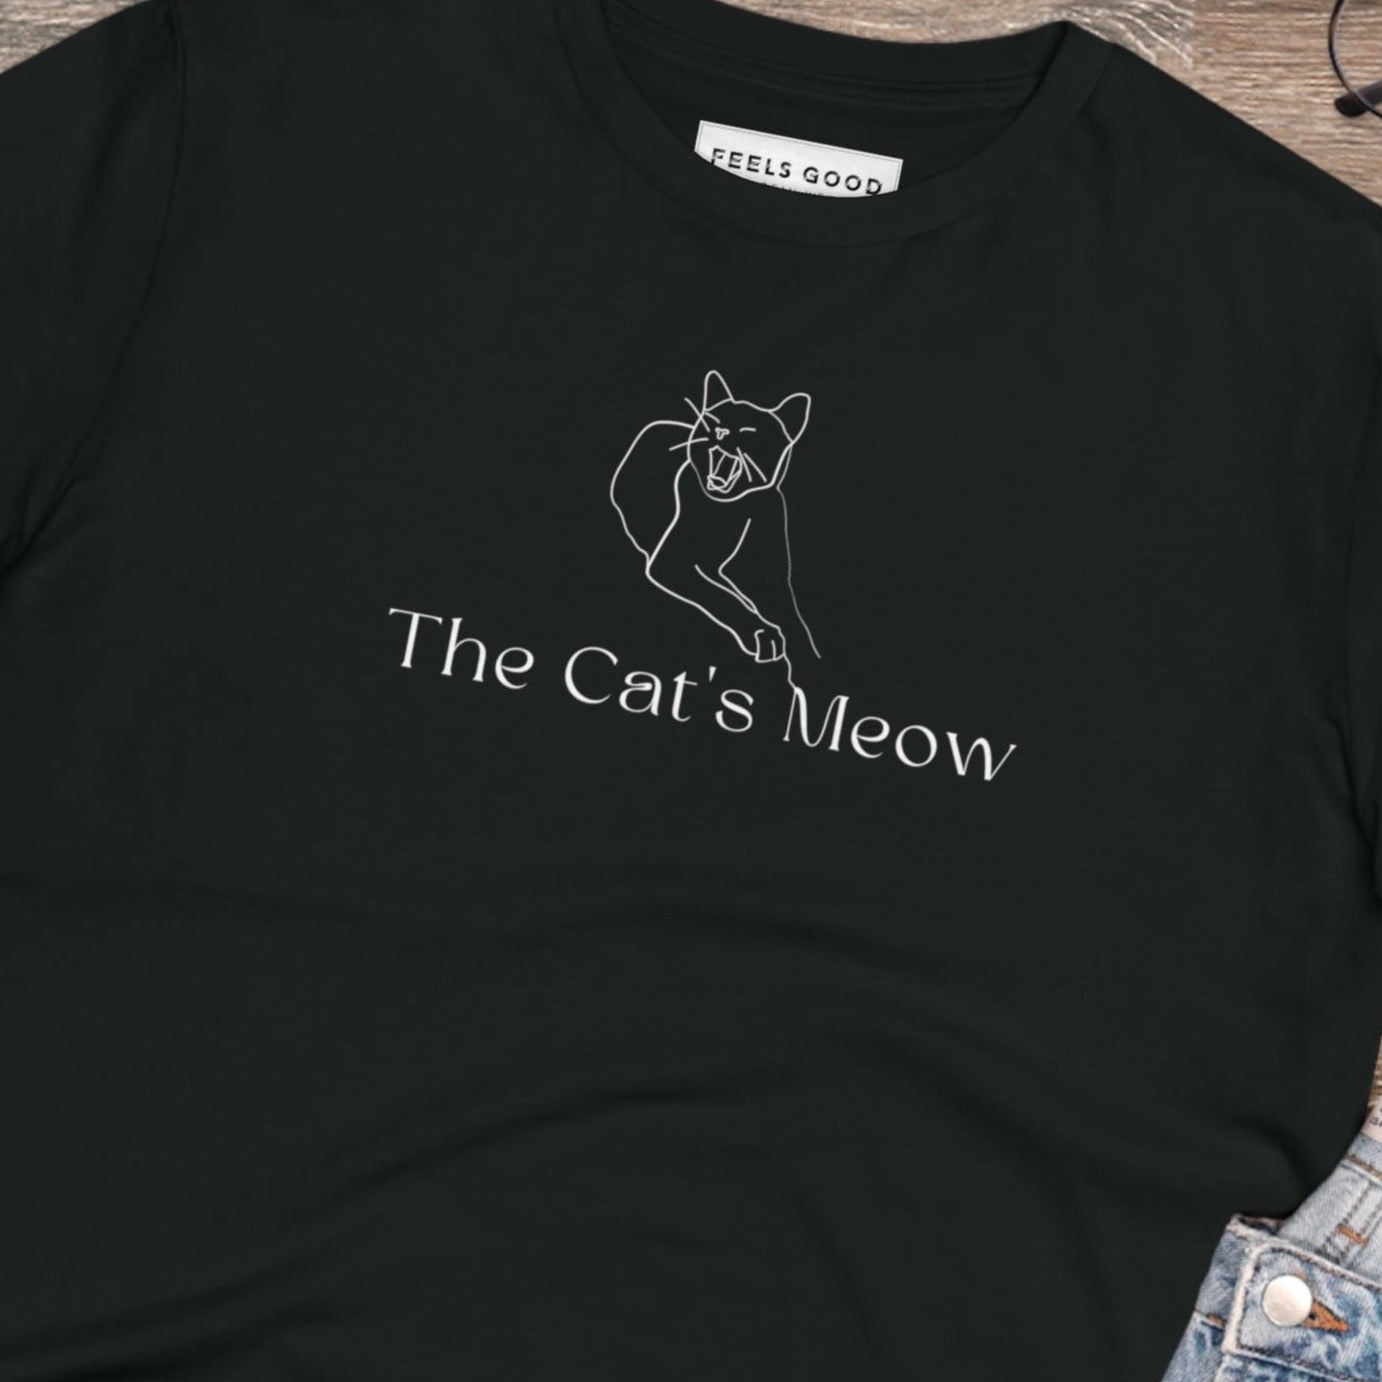 Organic Cotton 'The Cats Meow' Funny Cat T-shirt - Fun Cat T shirt